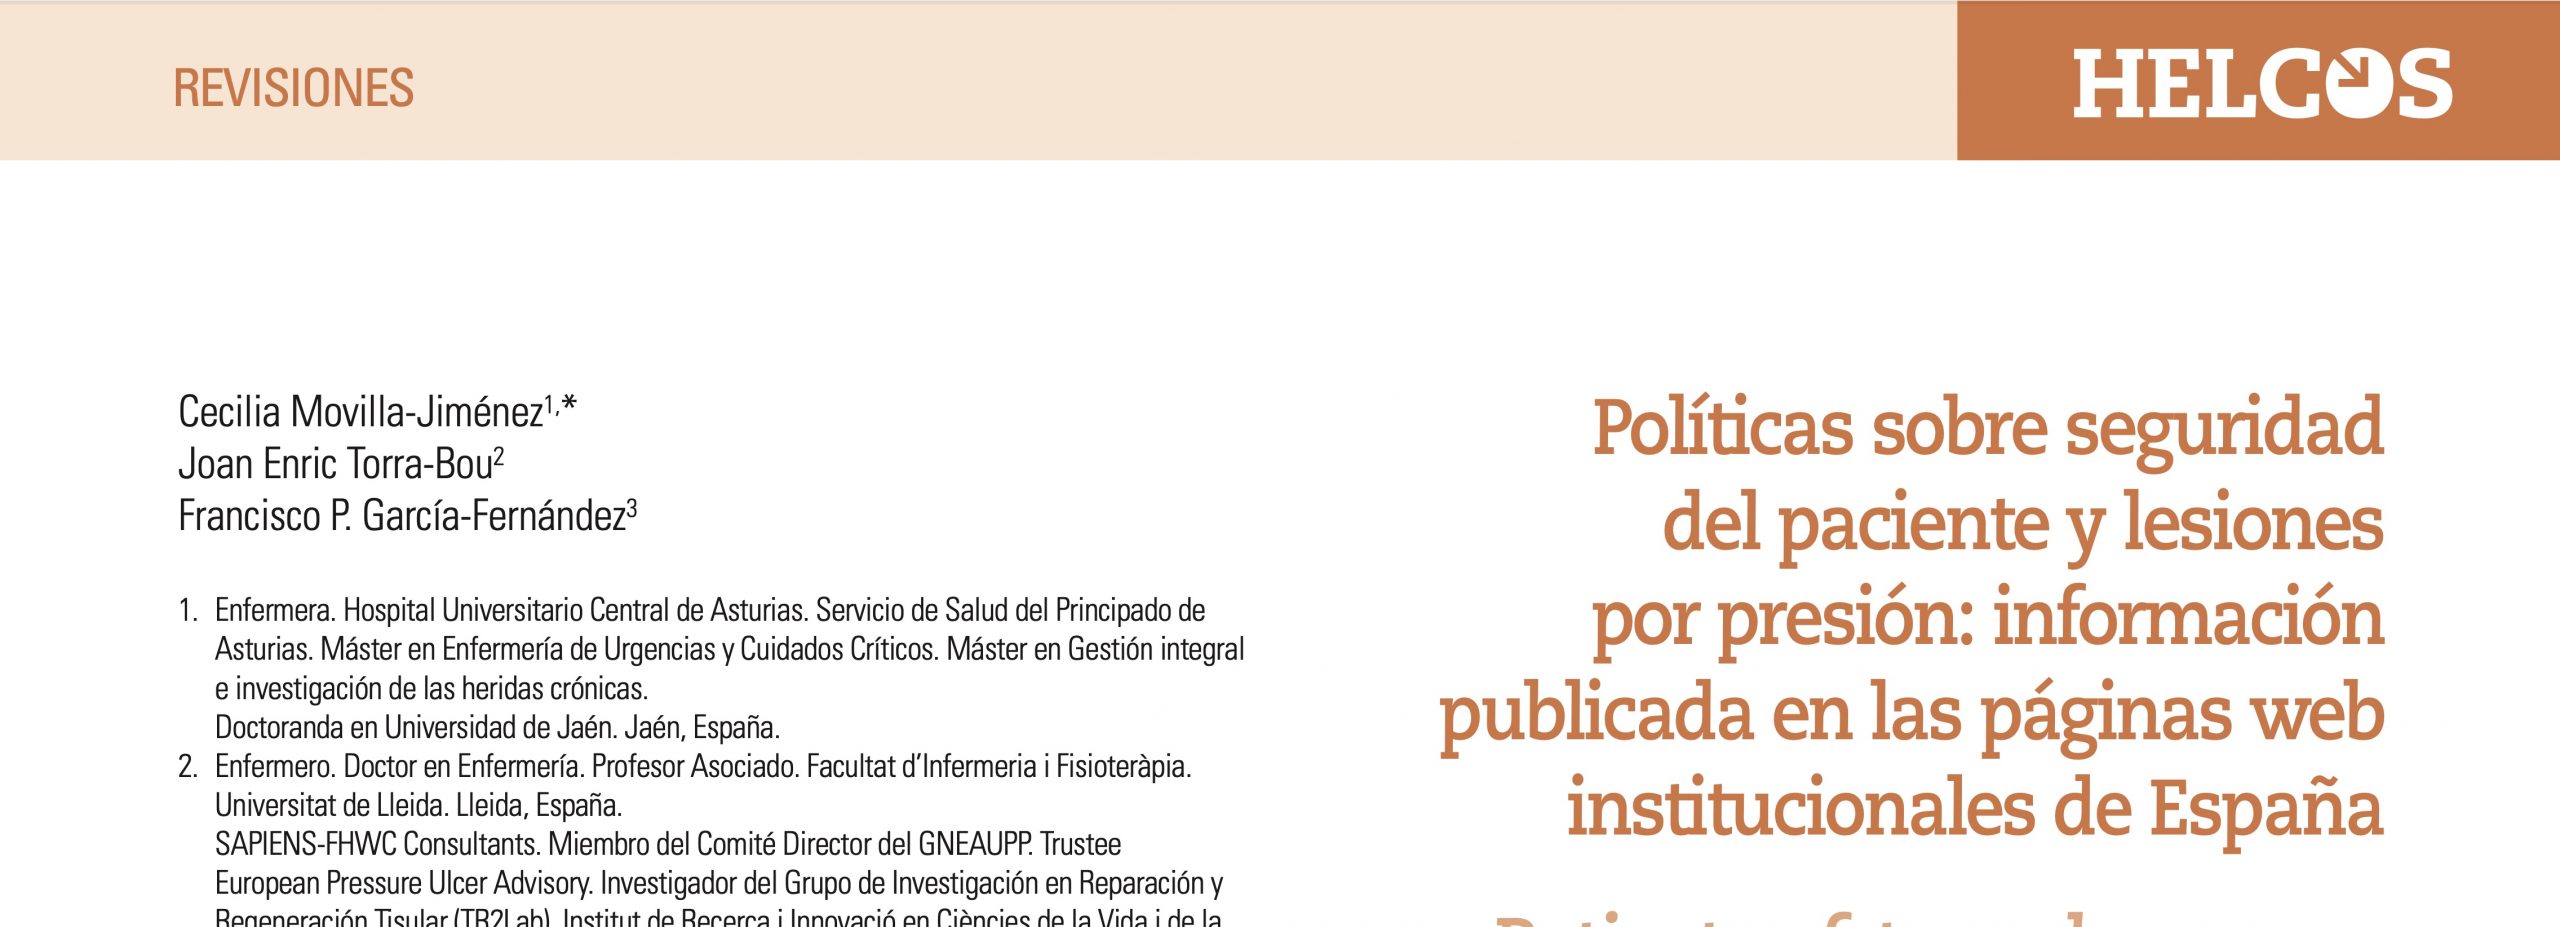 Políticas sobre seguridad del paciente y lesiones por presión: información publicada en las páginas web institucionales en España.